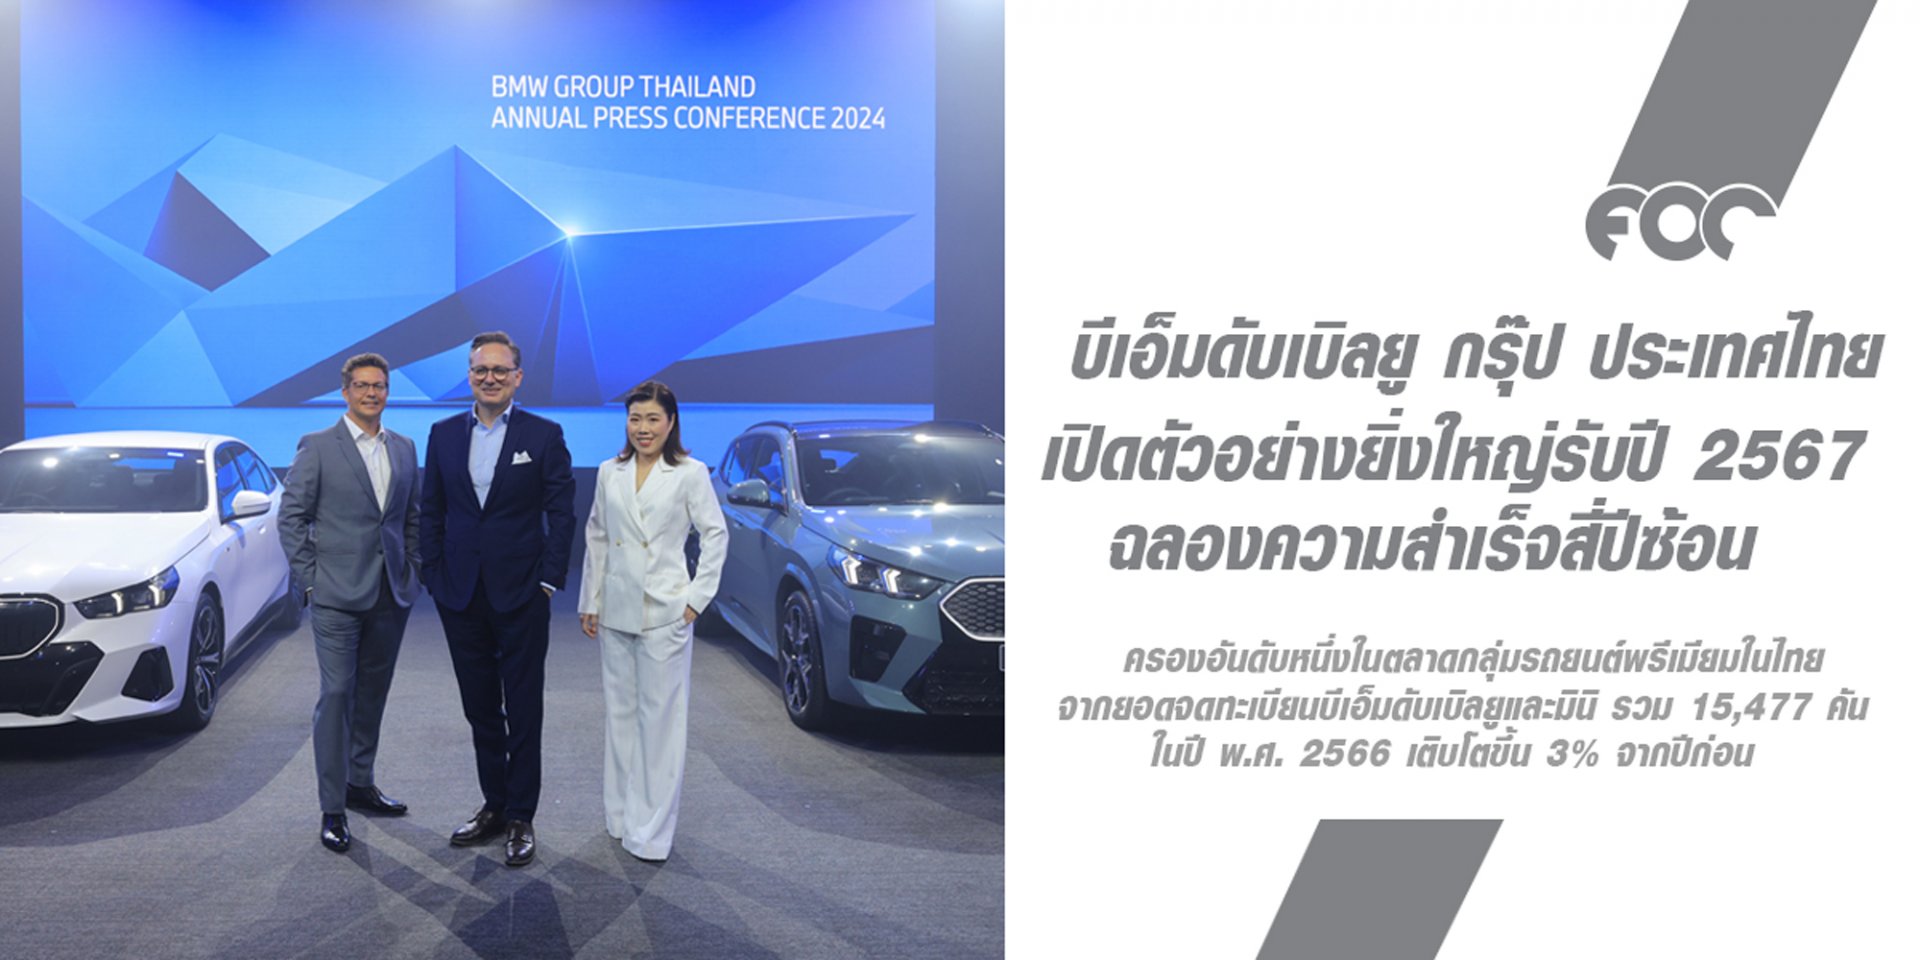 บีเอ็มดับเบิลยู กรุ๊ป ประเทศไทย เปิดตัวอย่างยิ่งใหญ่รับปี 2567 ด้วยยนตรกรรมใหม่ 10 รุ่นจากทั้งสามแบรนด์ ตอกย้ำจุดยืนเบอร์หนึ่งในกลุ่มยานยนต์พรีเมียม